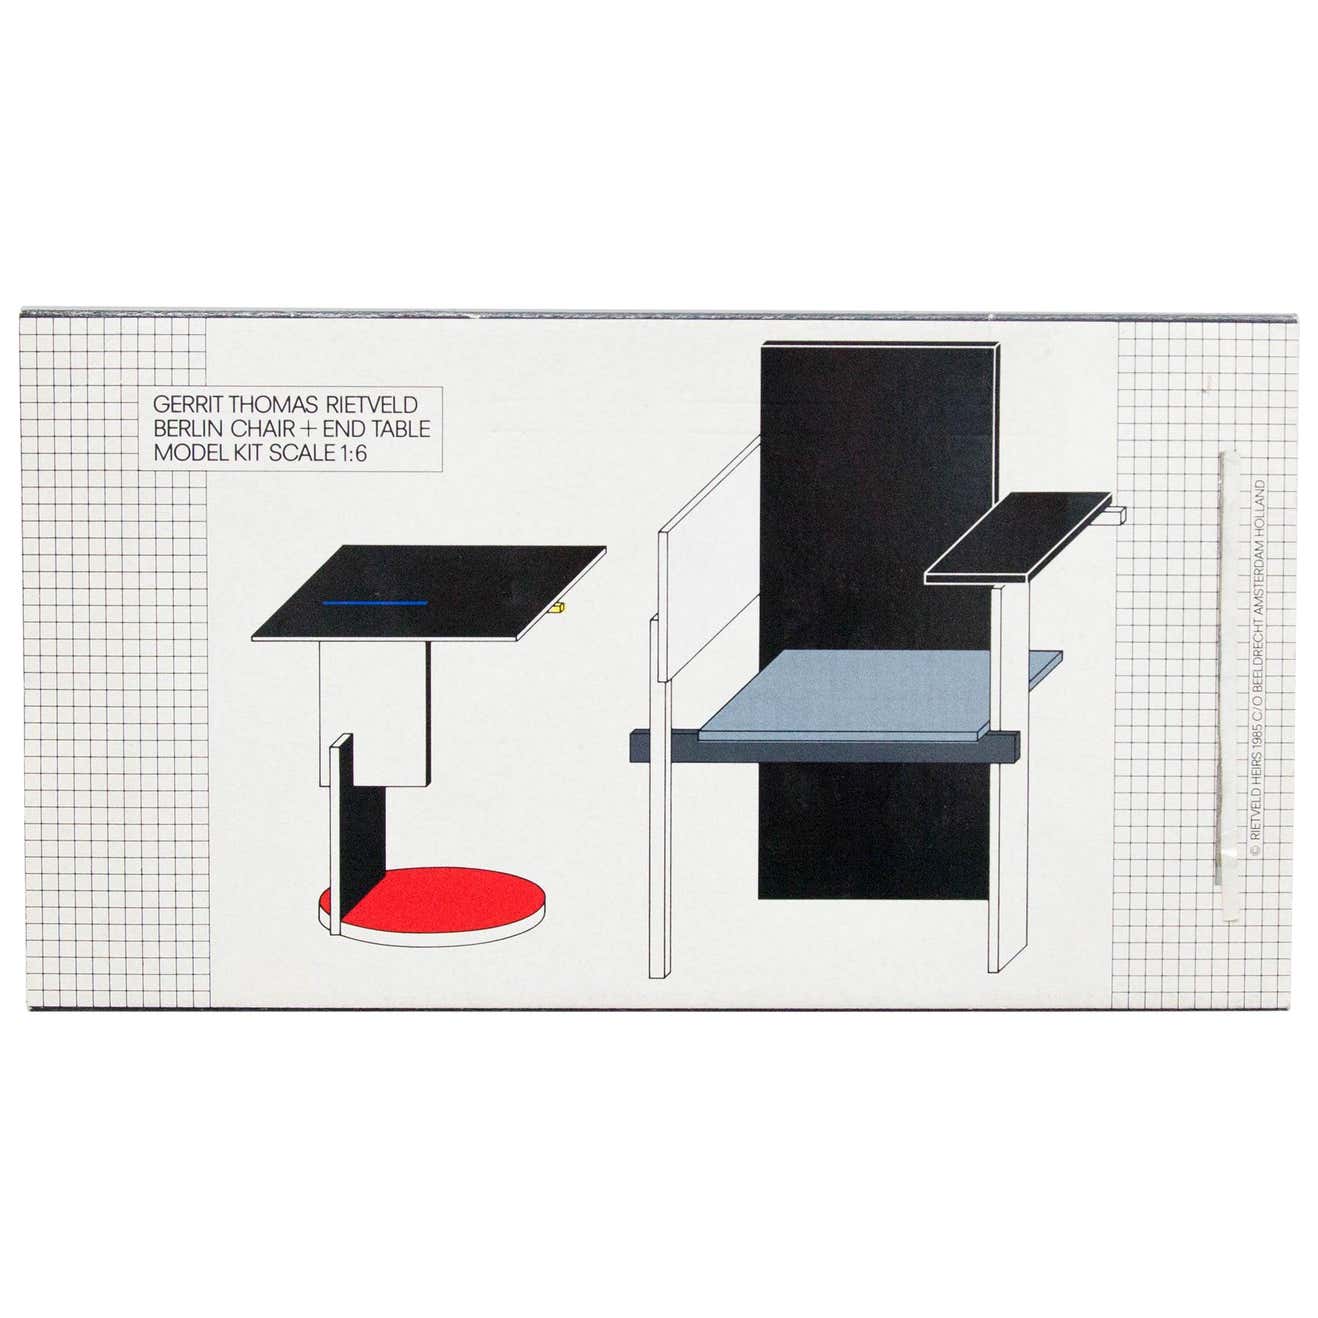 Modell-Spielzeug „Berliner Stuhl und Beistelltisch“ von Rietveld, 1985